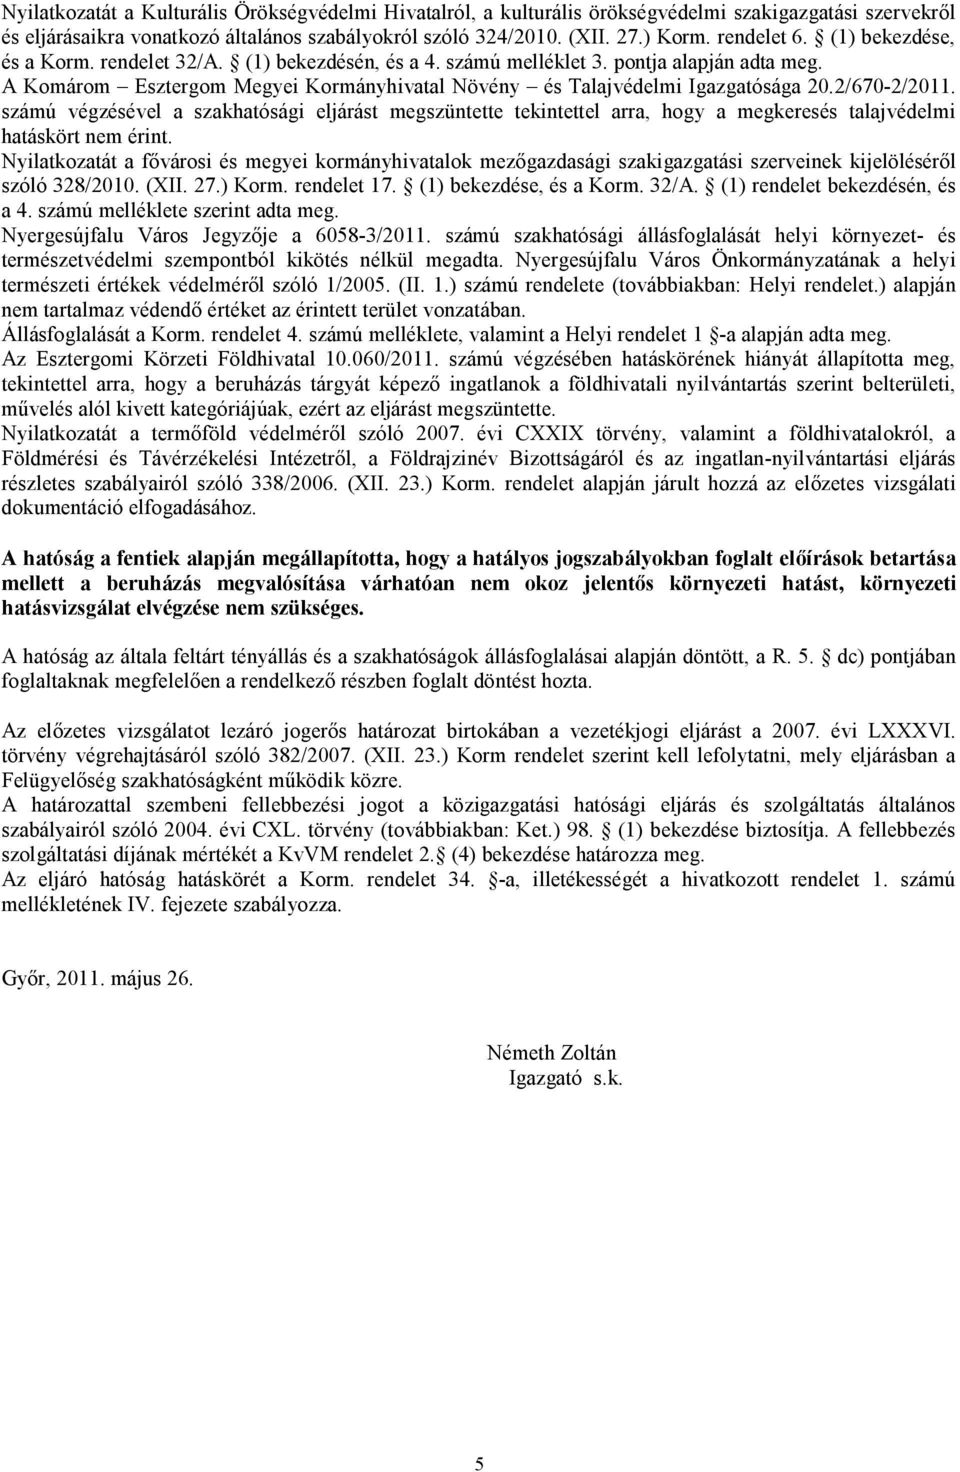 A Komárom Esztergom Megyei Kormányhivatal Növény és Talajvédelmi Igazgatósága 20.2/670-2/2011.